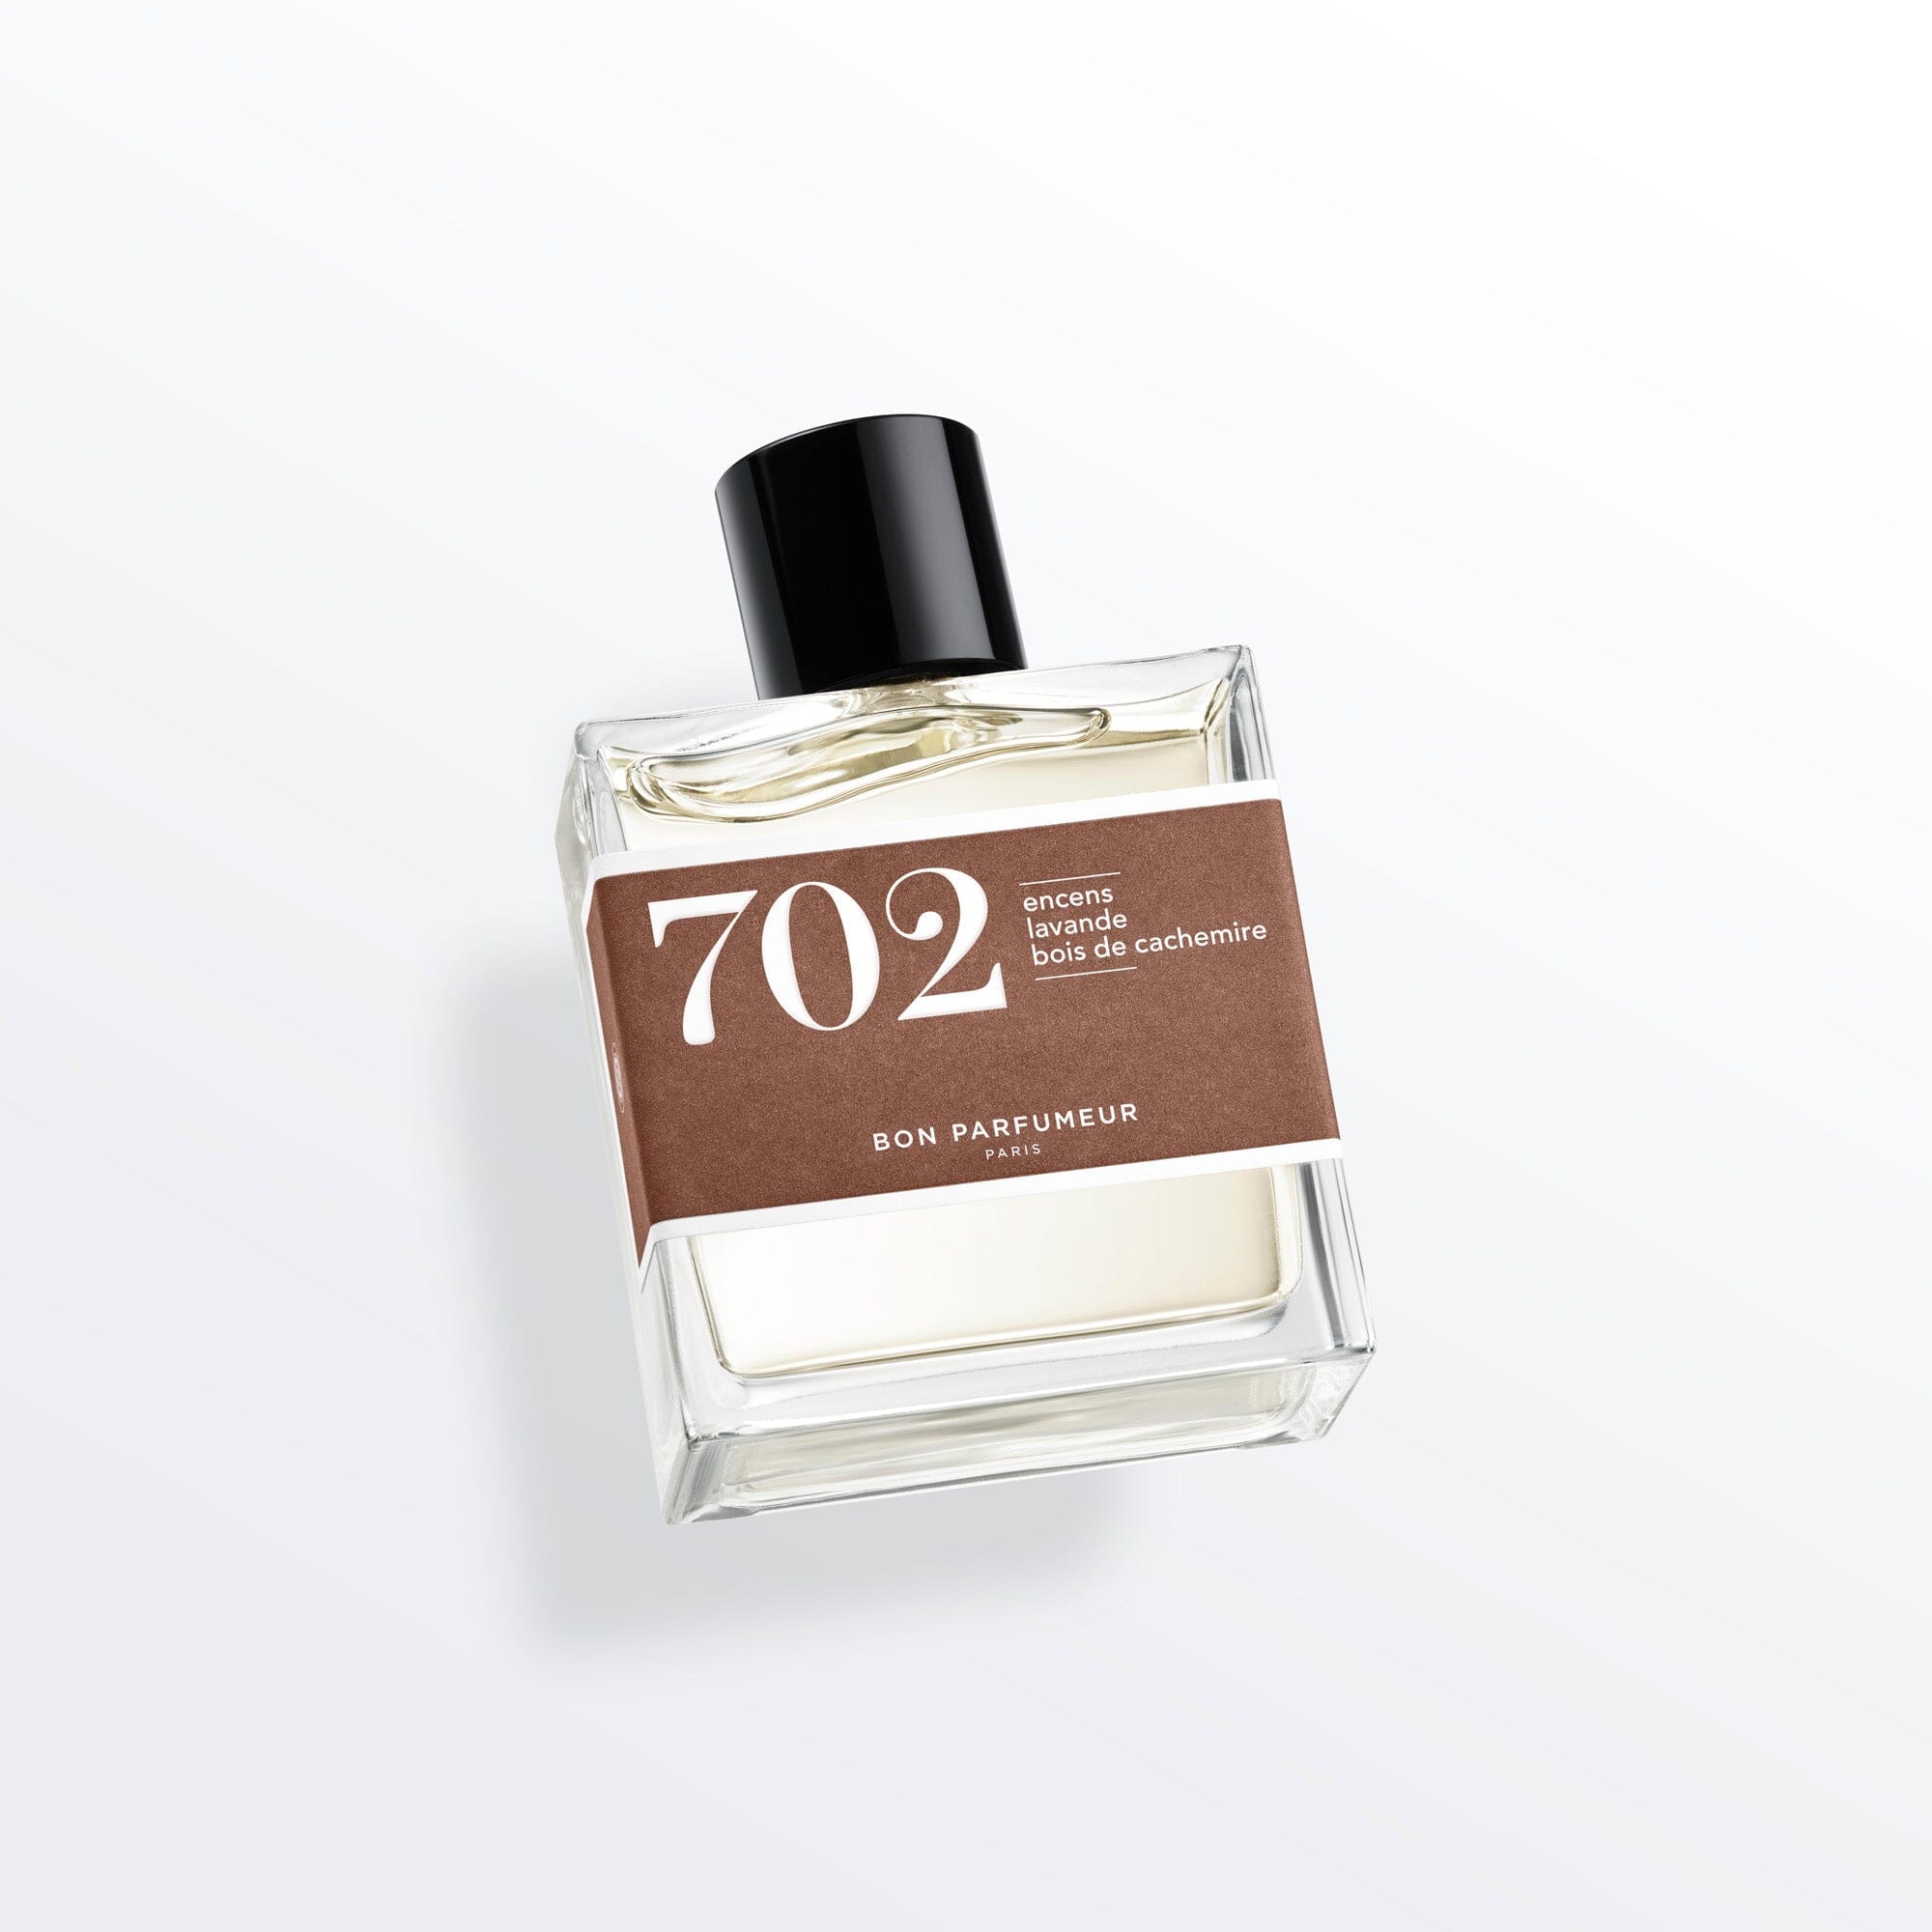 de parfum 702 with incense, lavender and wood – Parfumeur